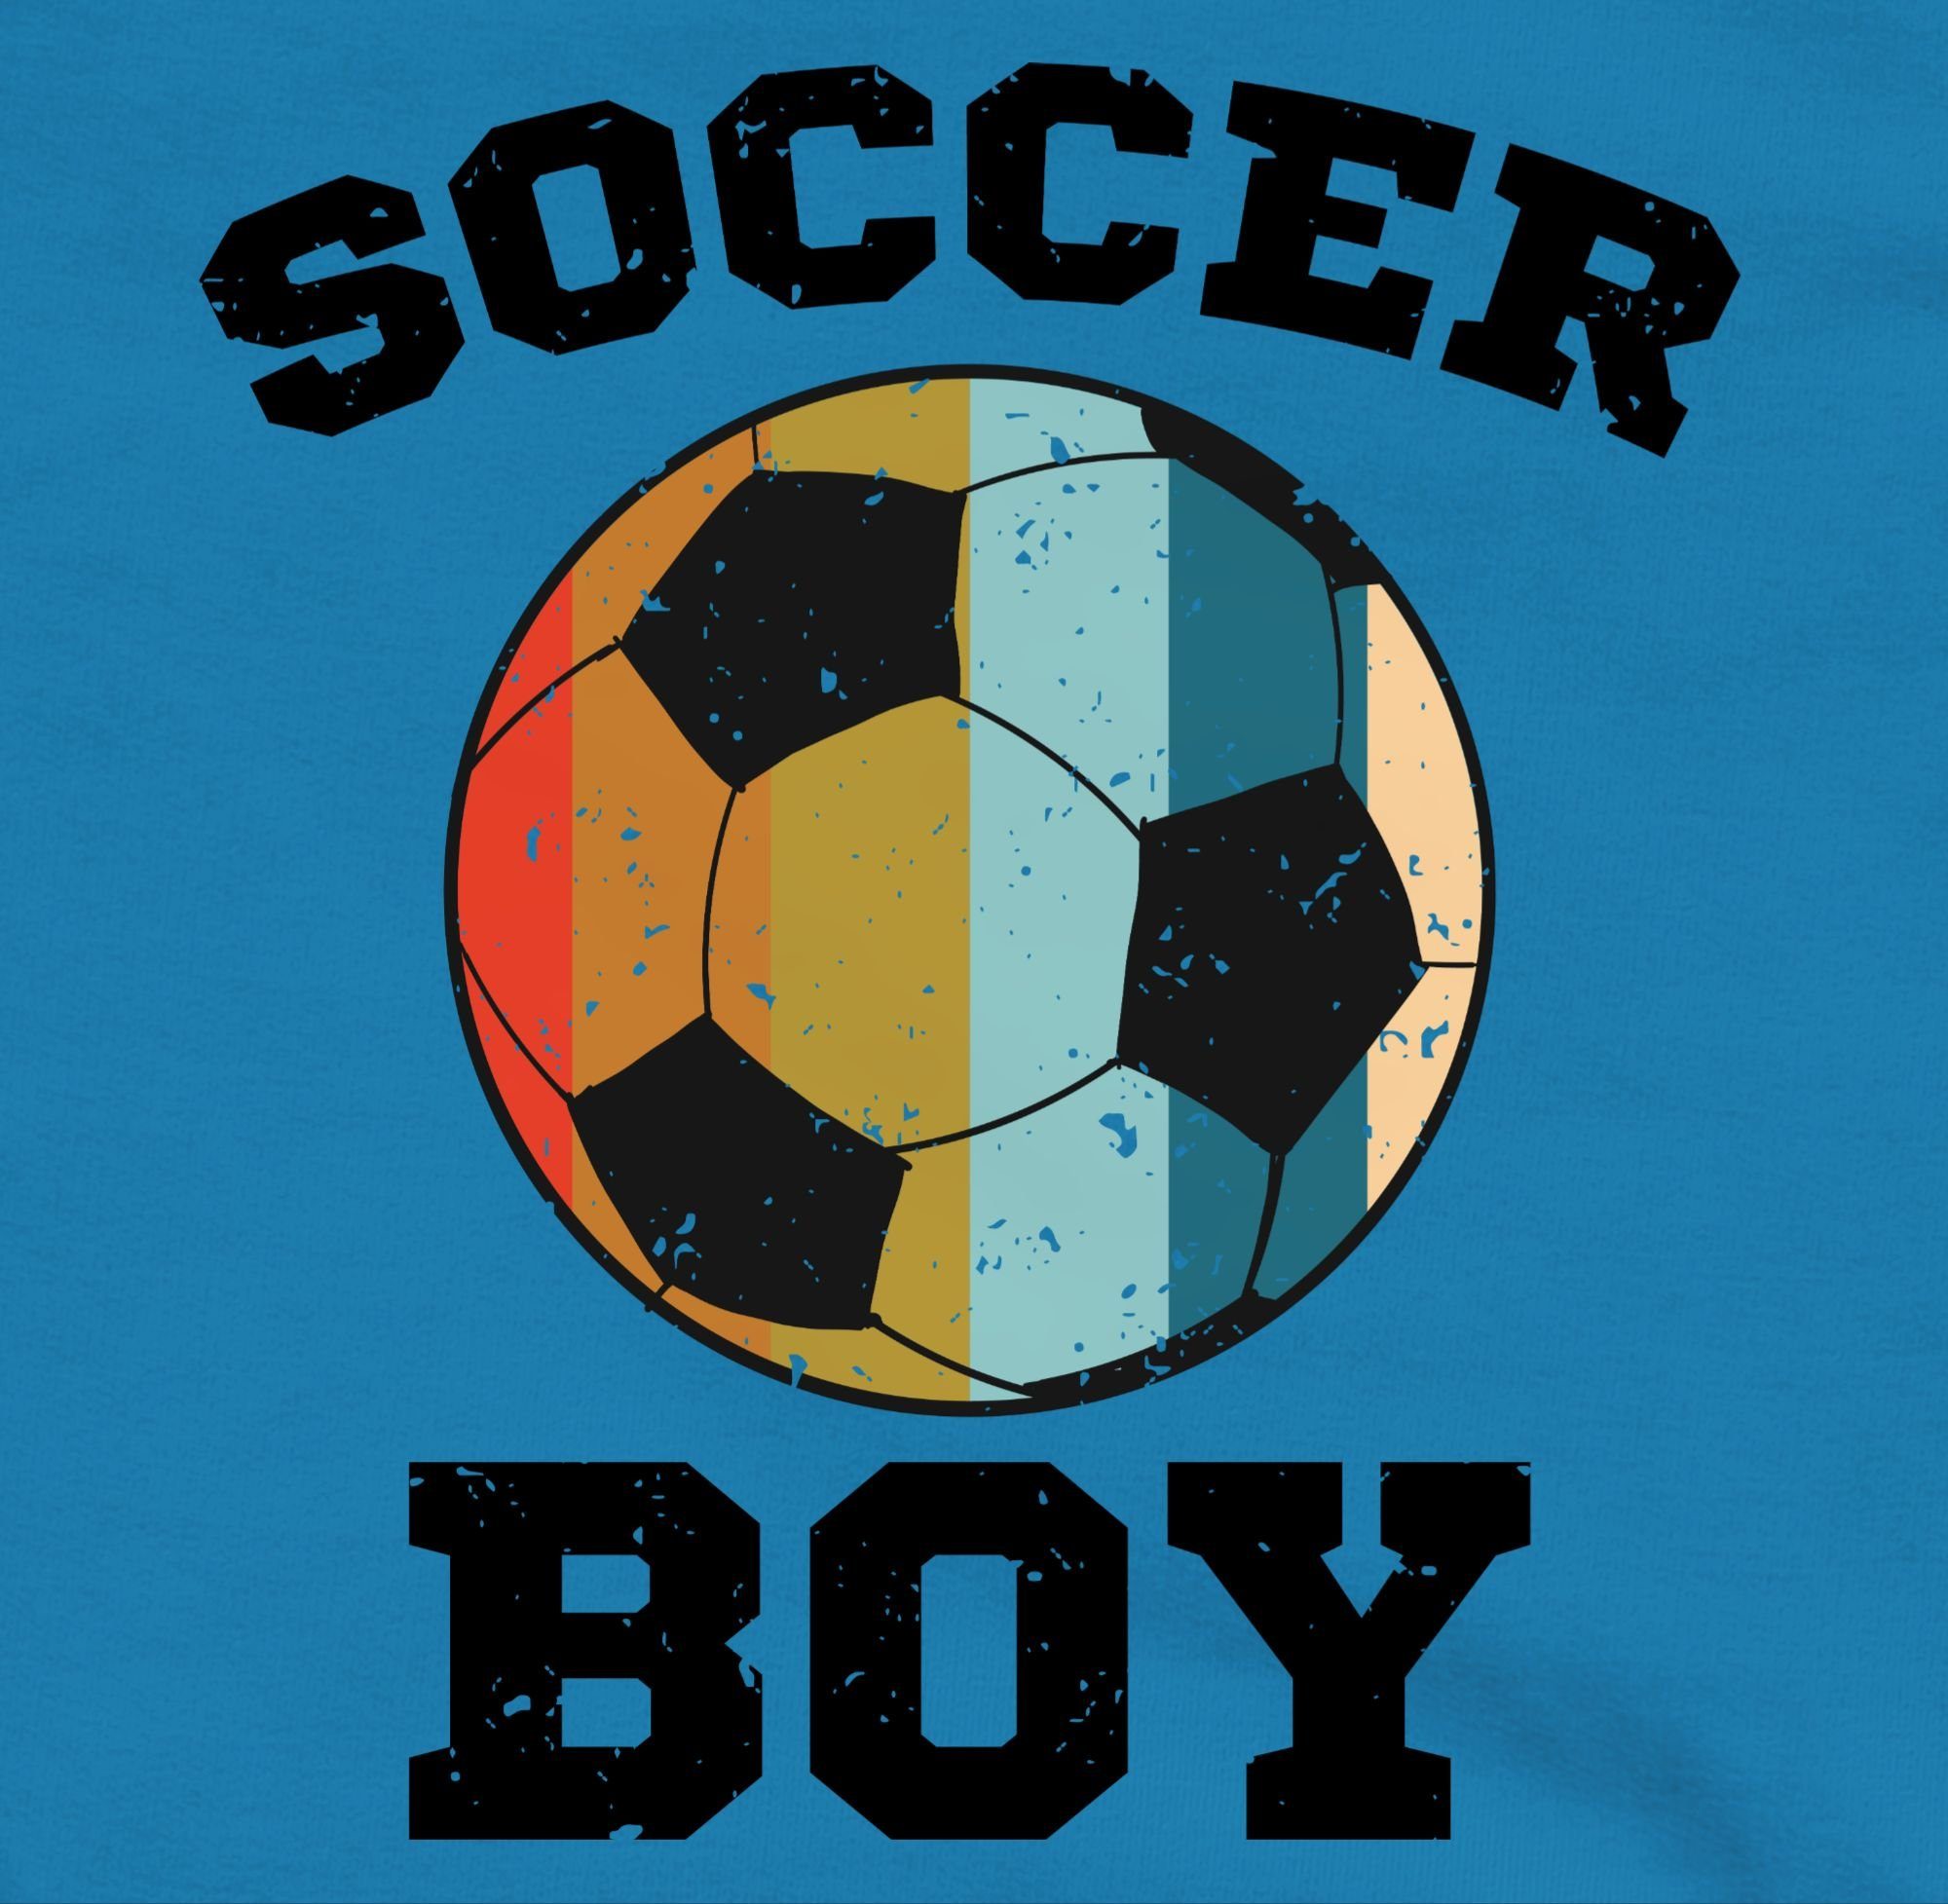 Soccer Hoodie Boy Shirtracer Kleidung Himmelblau Sport 1 Vintage Kinder